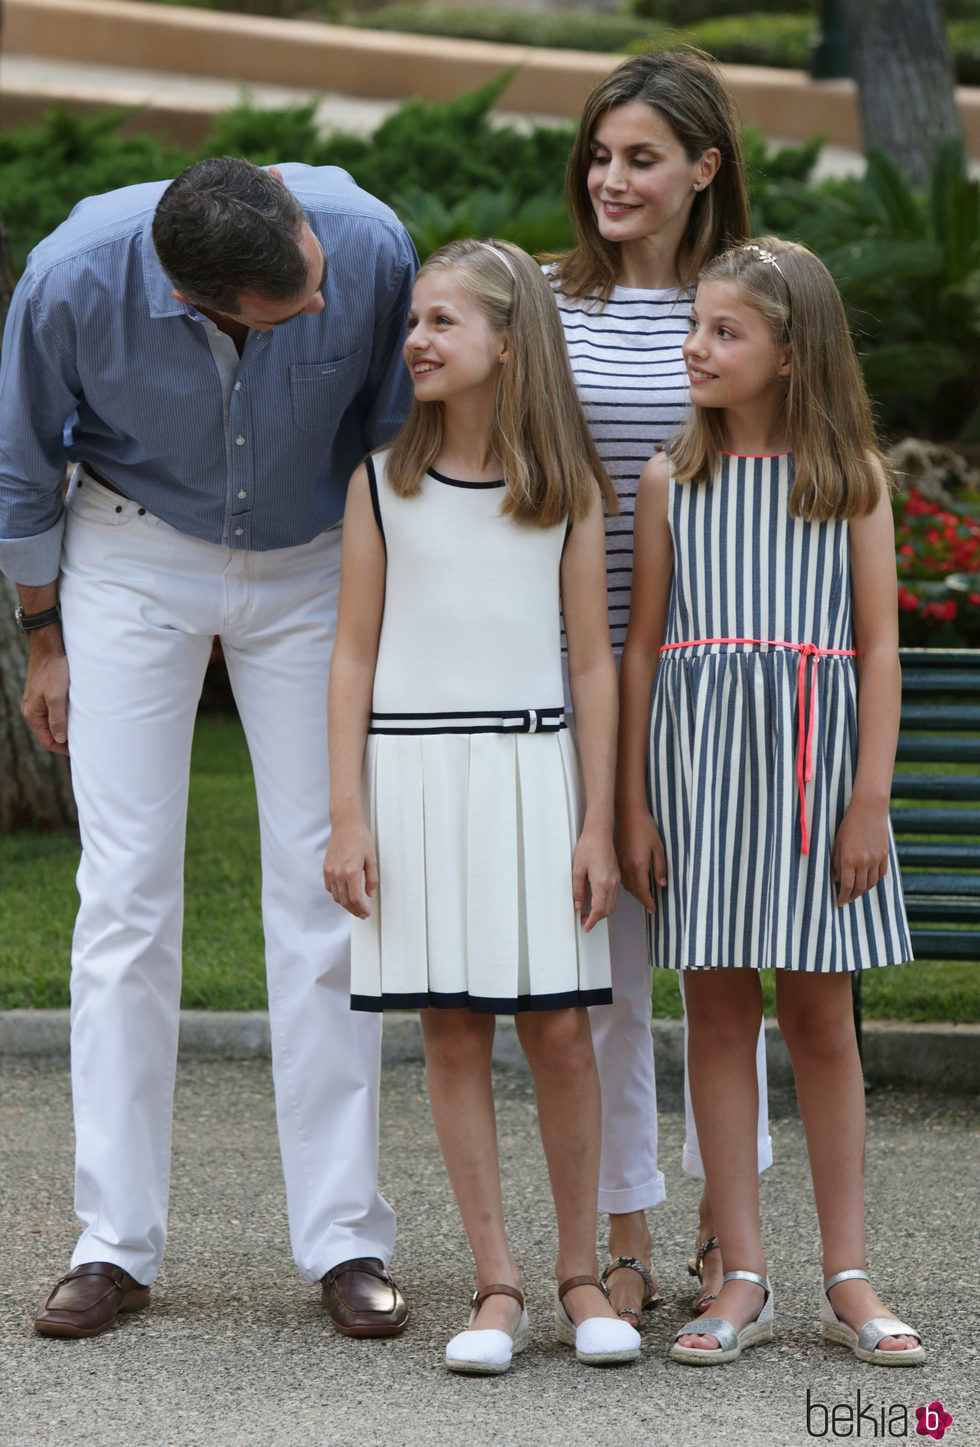 Los Reyes Felipe VI y Letizia se divierten con sus hijas en el posado de verano 2016